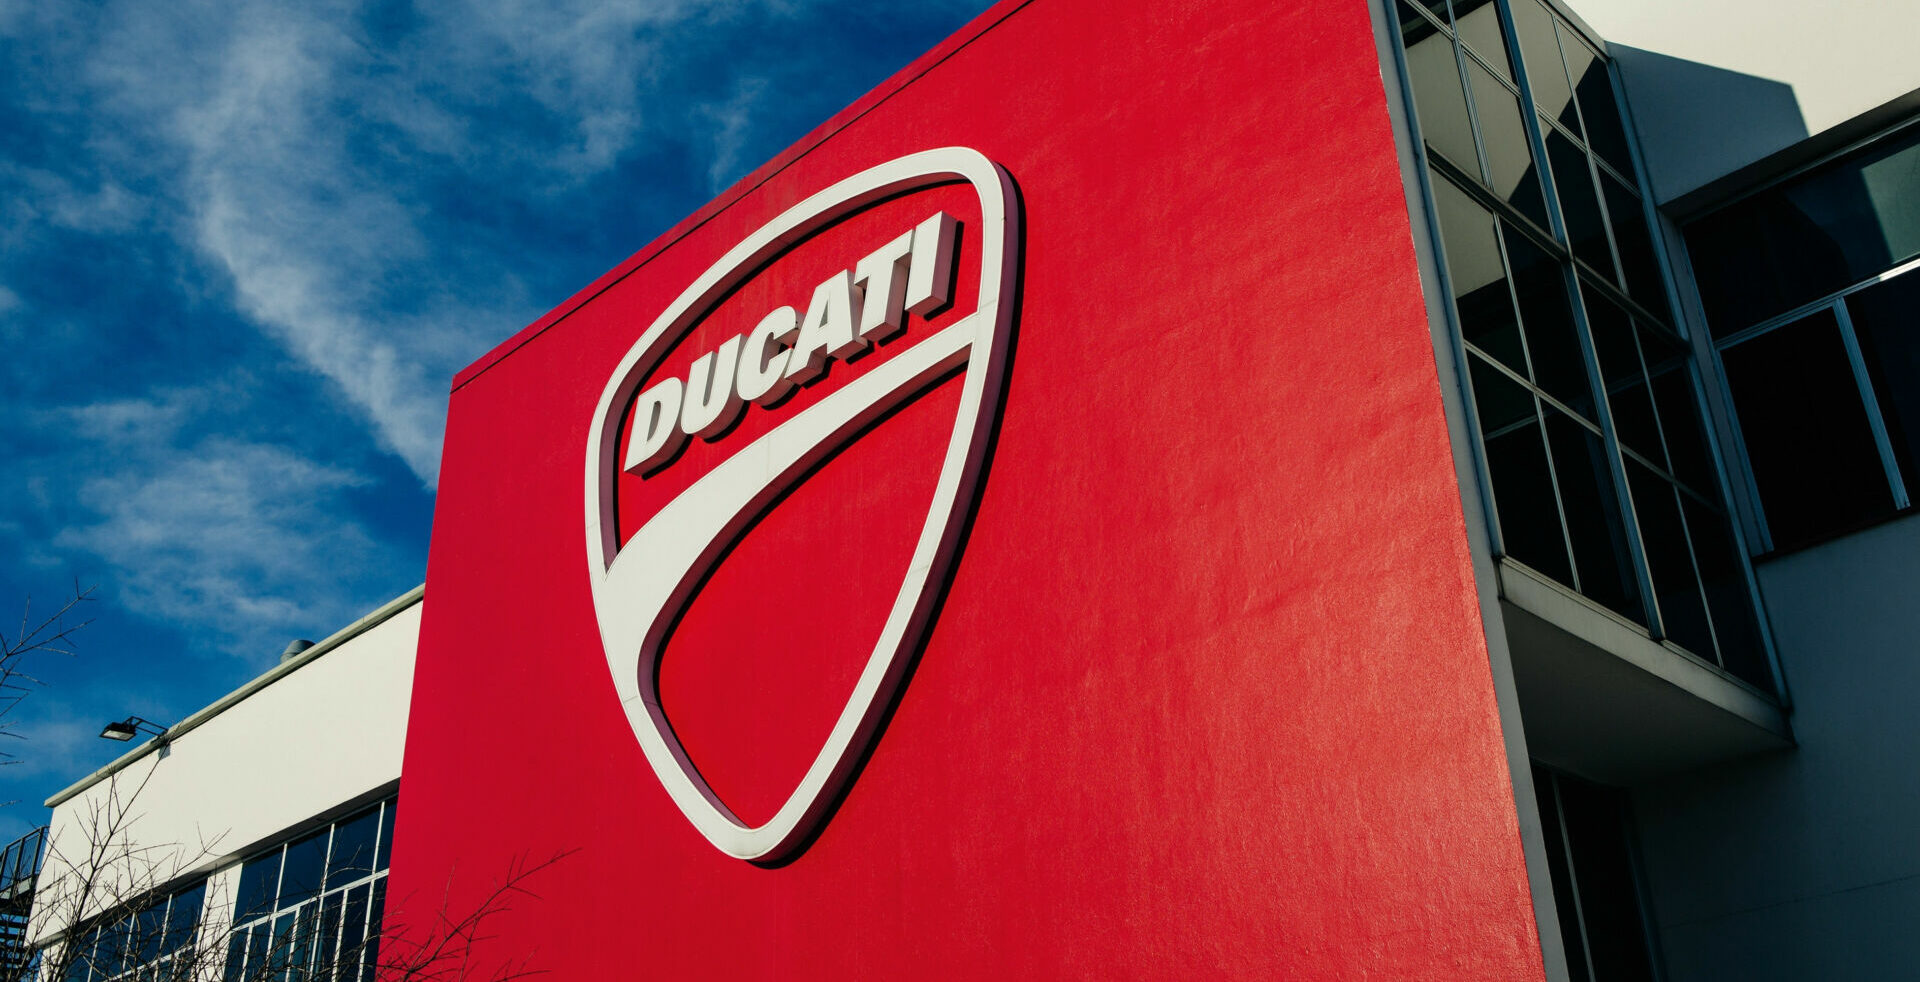 Ducati's headquarters in Bologna, Italy. Photo courtesy Ducati.